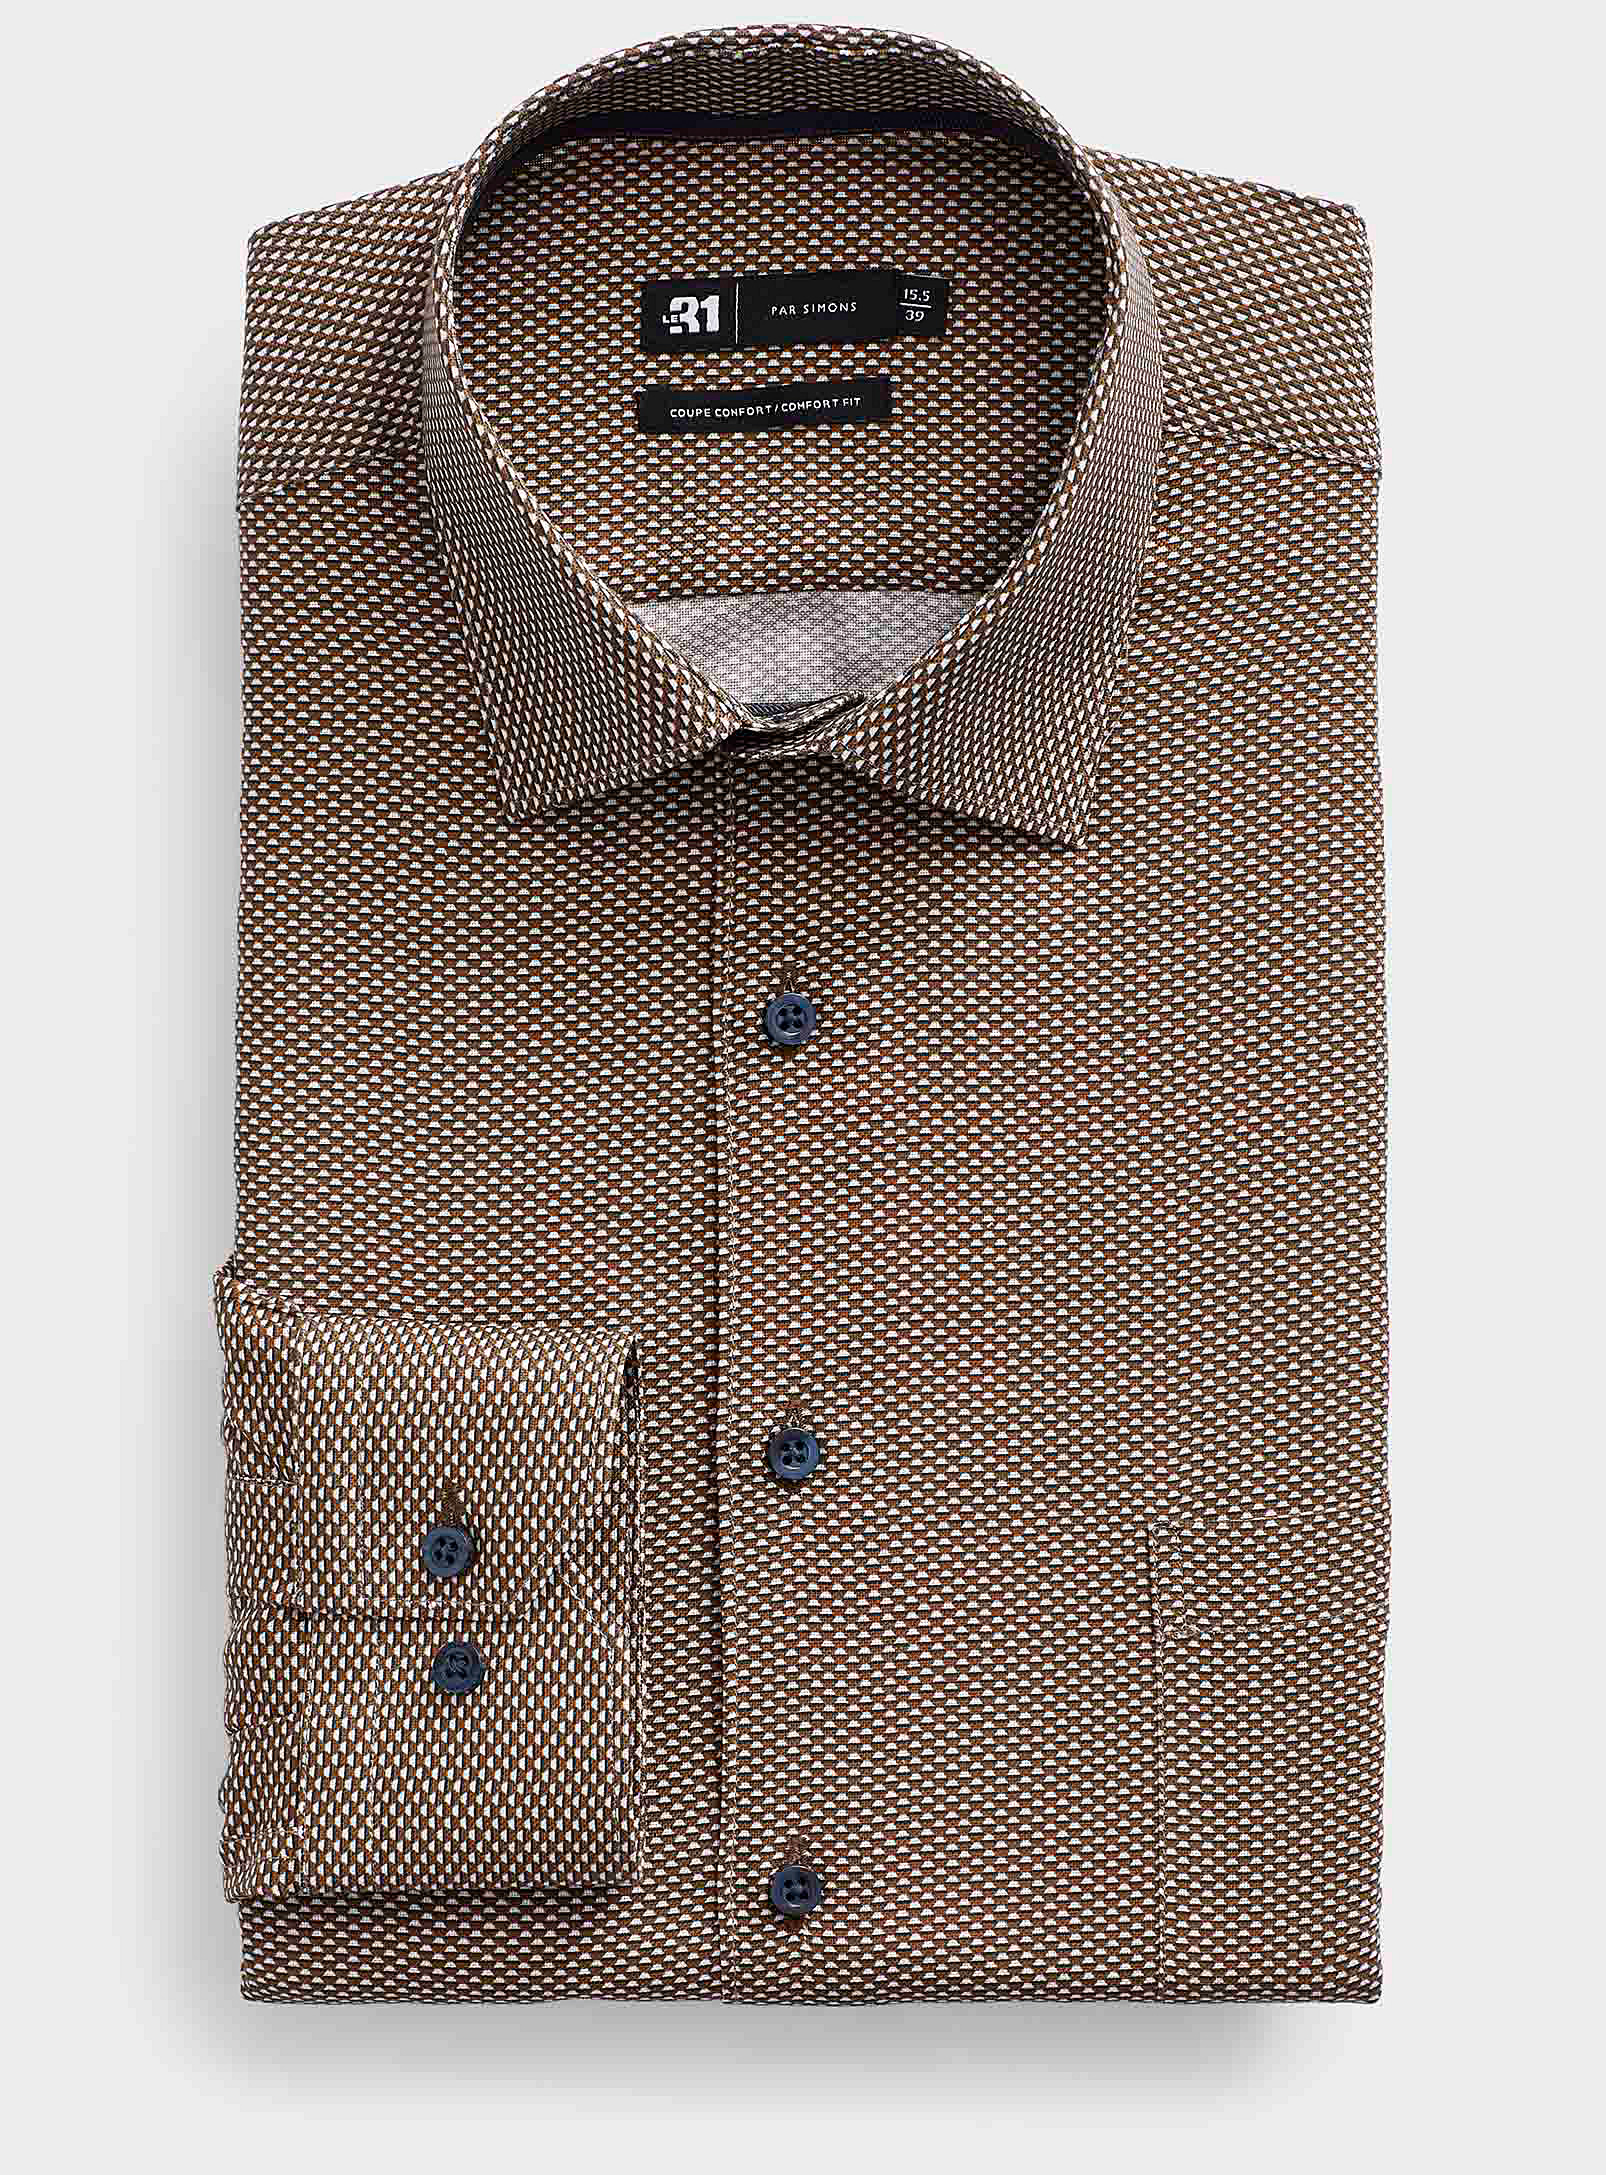 Le 31 - Men's Optical mosaic shirt Comfort fit